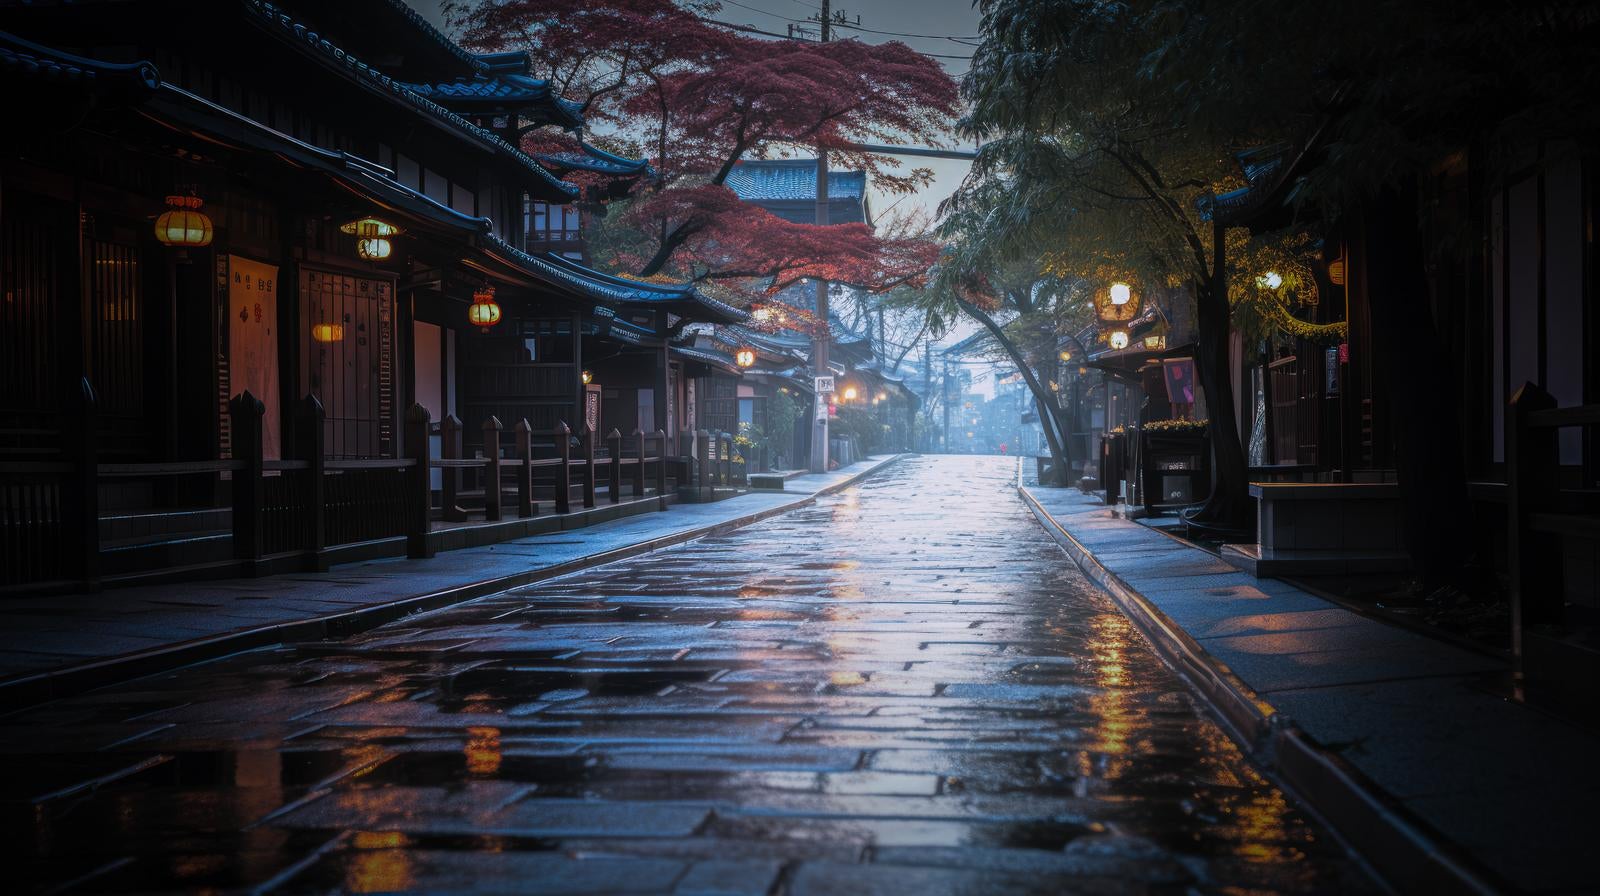 「雨上がりの日本風の通り」の写真